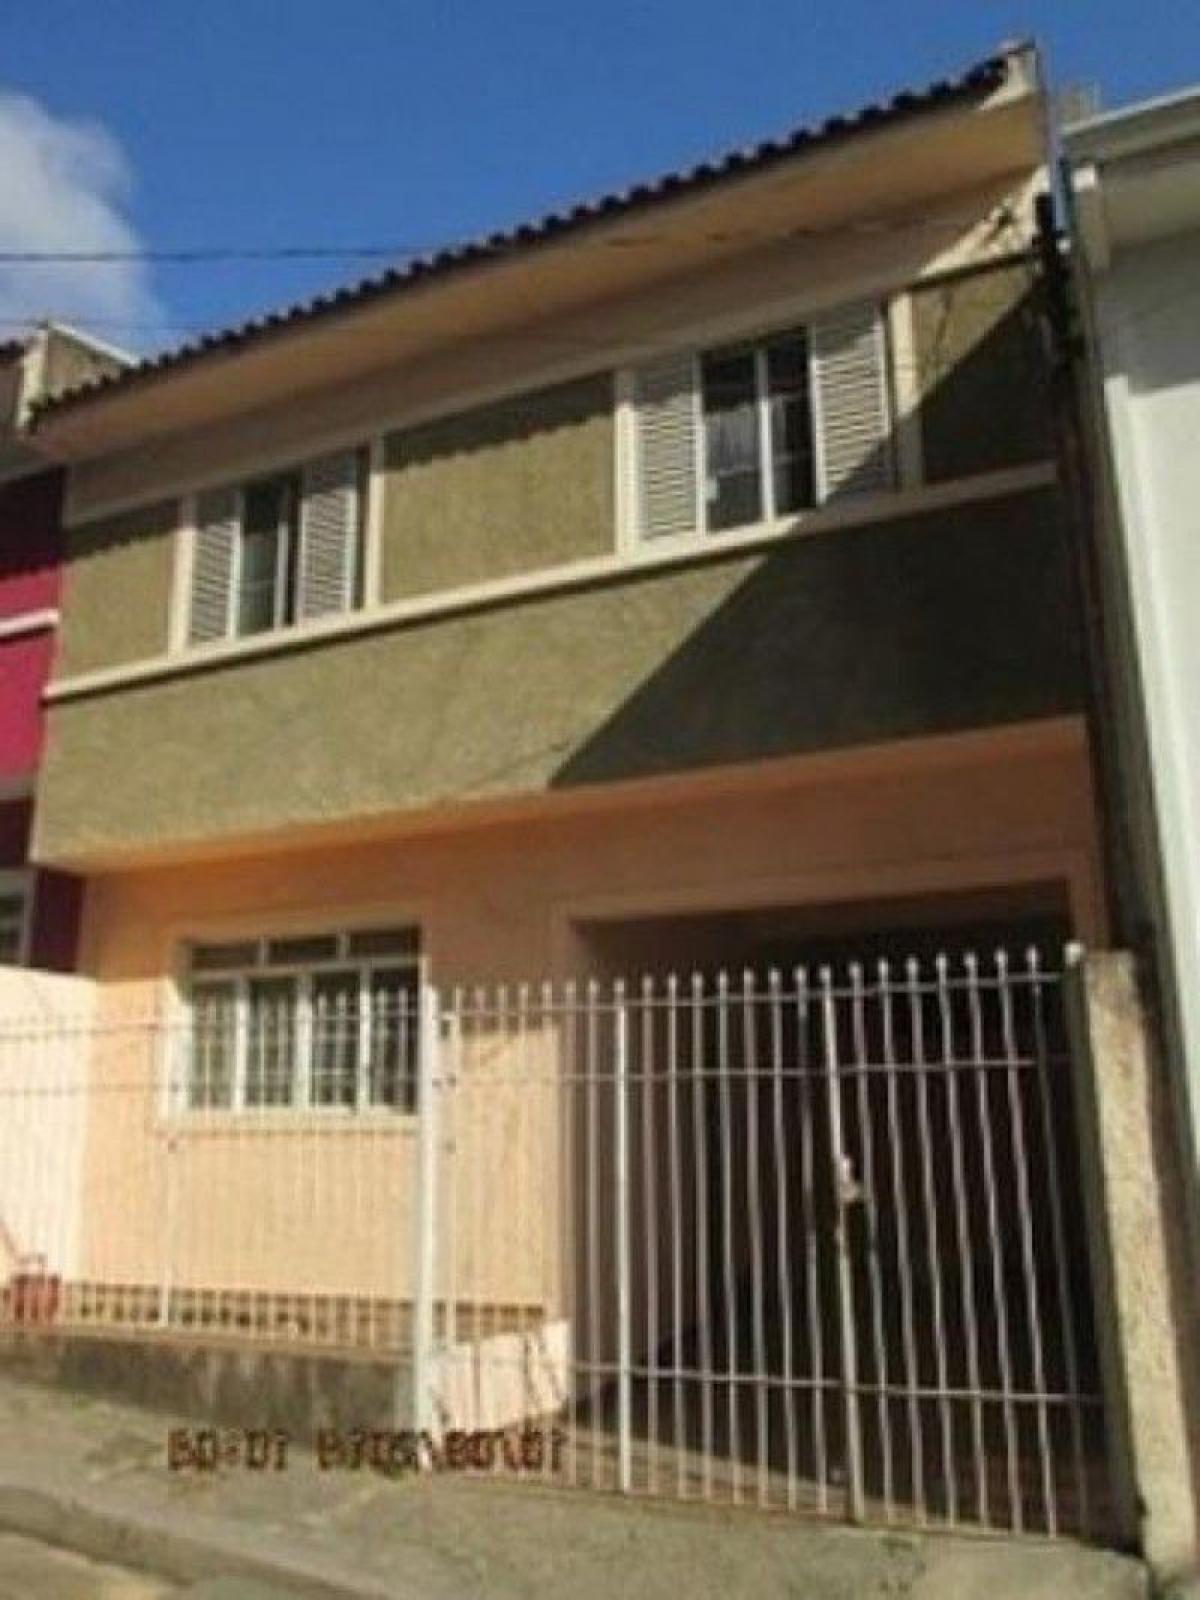 Picture of Home For Sale in Pouso Alegre, Minas Gerais, Brazil